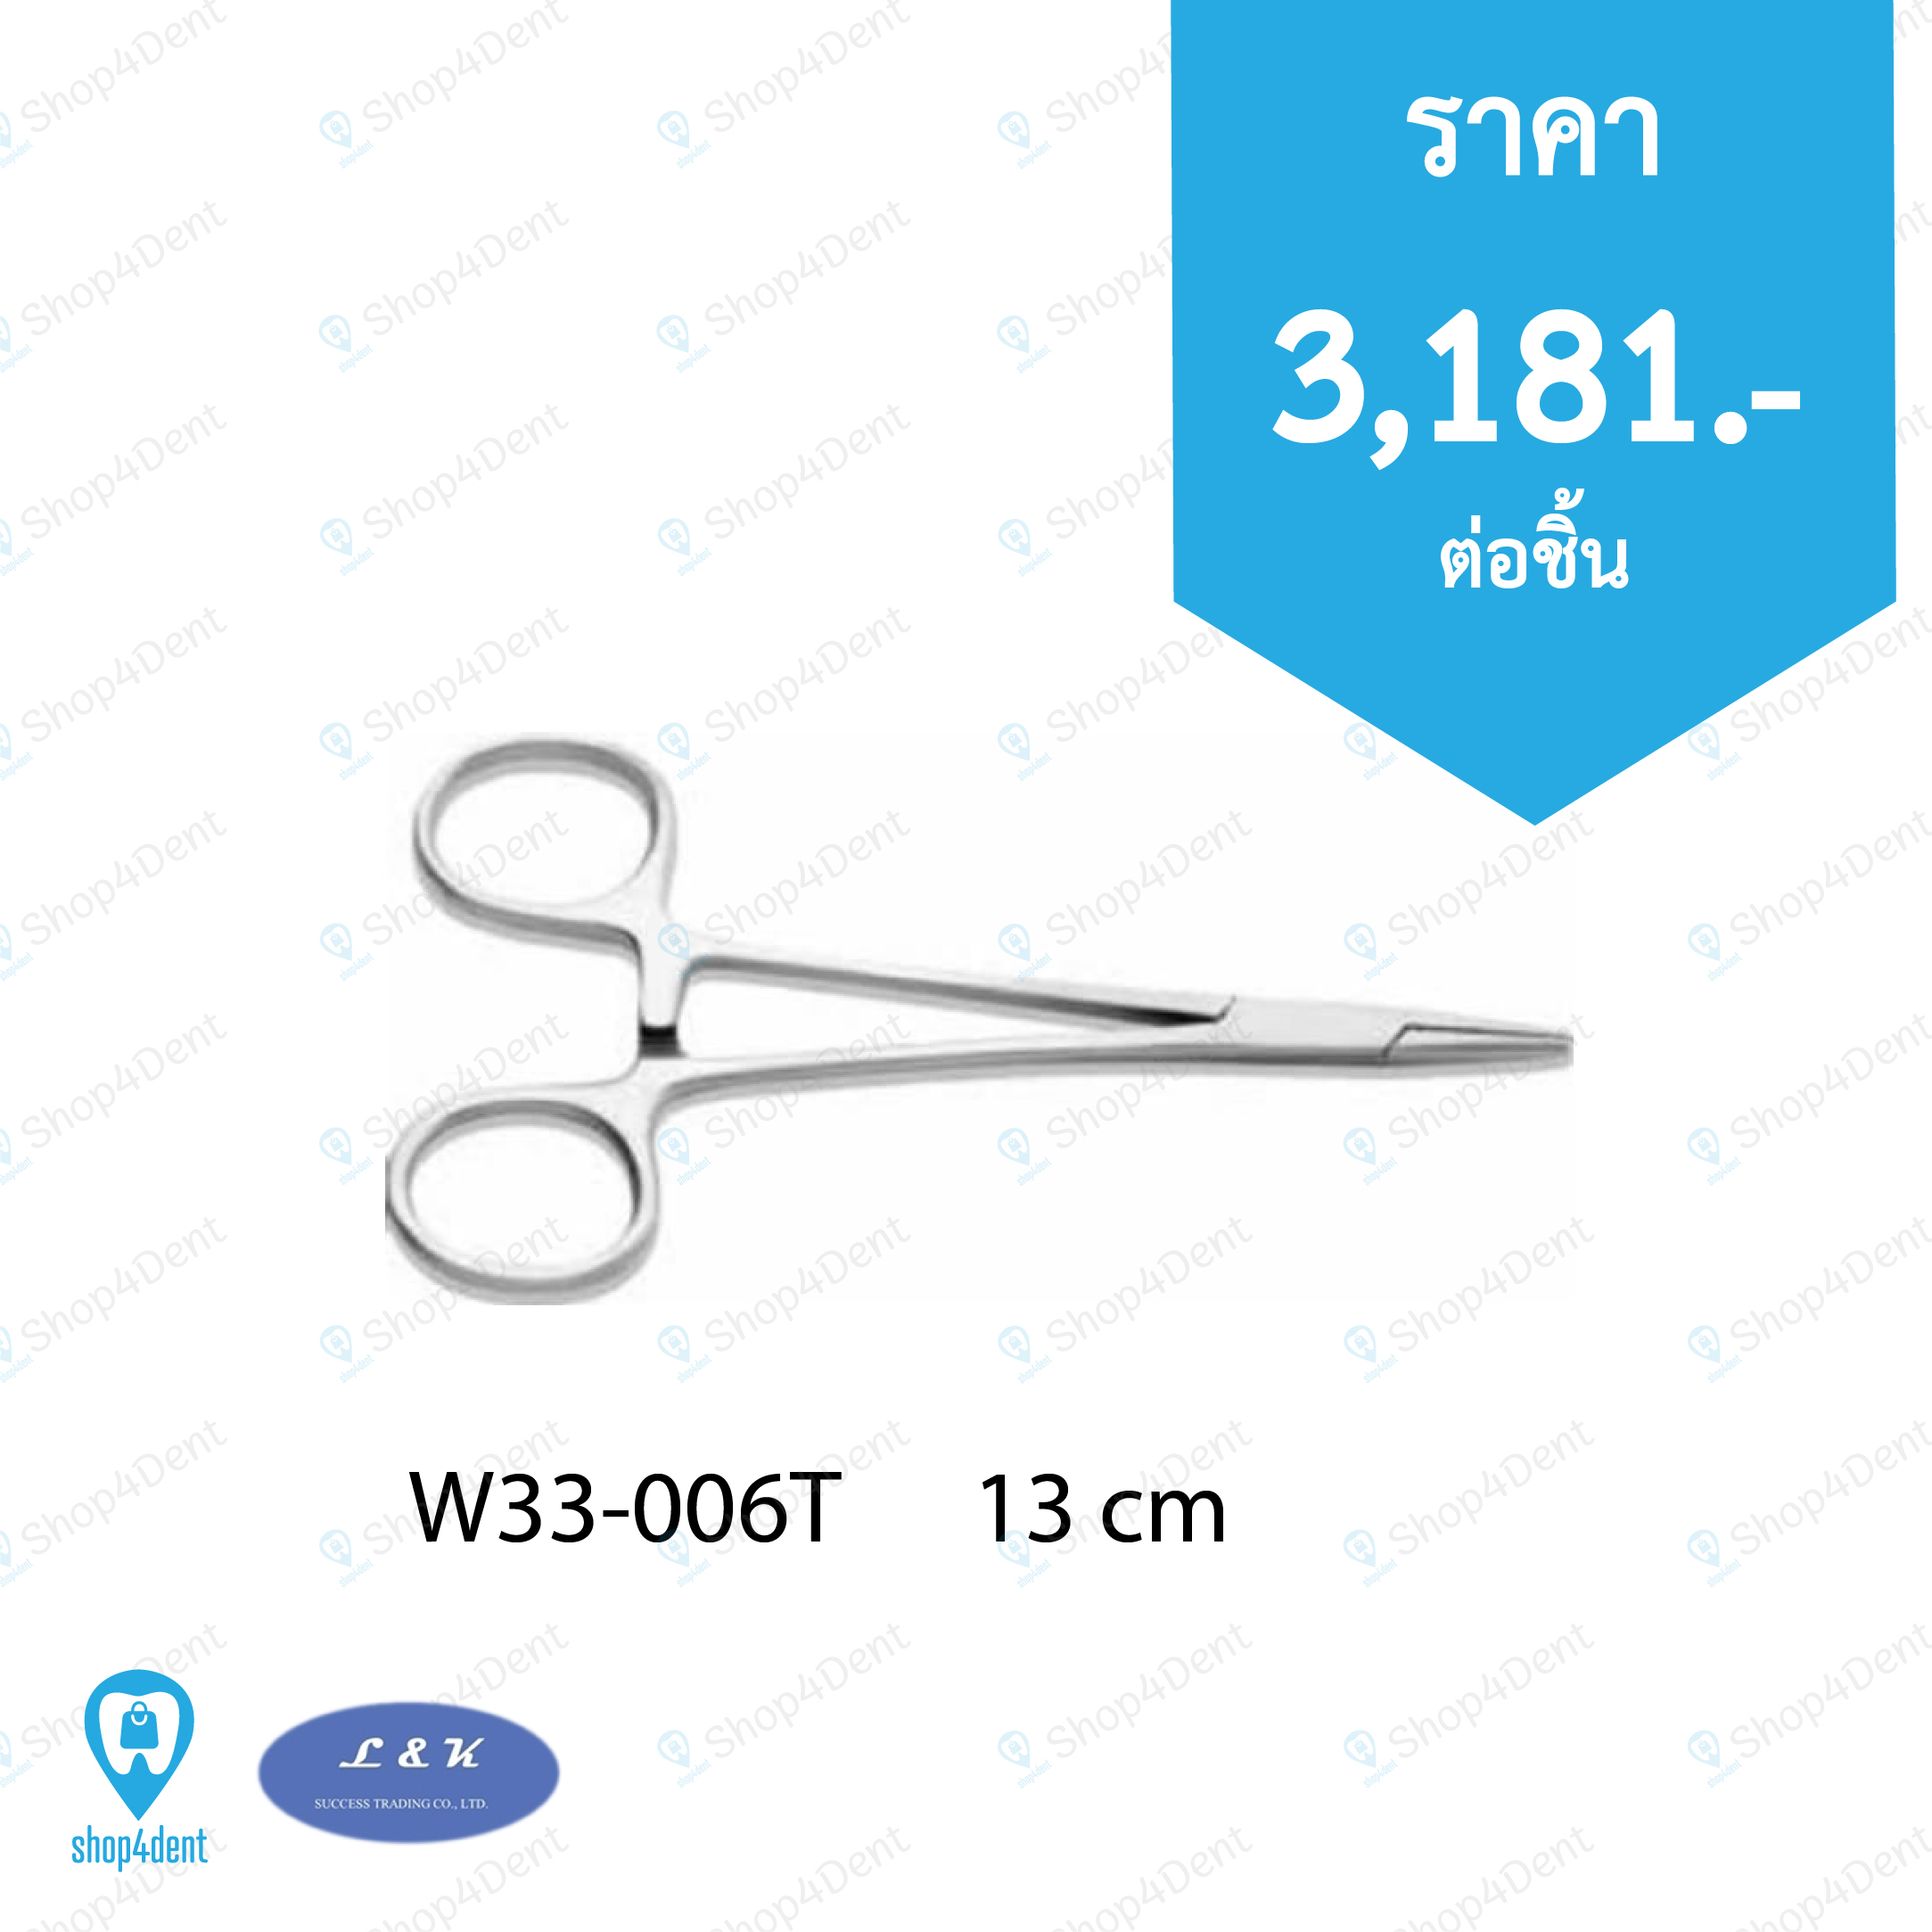 Needle Holders  W33-006T      13 cm